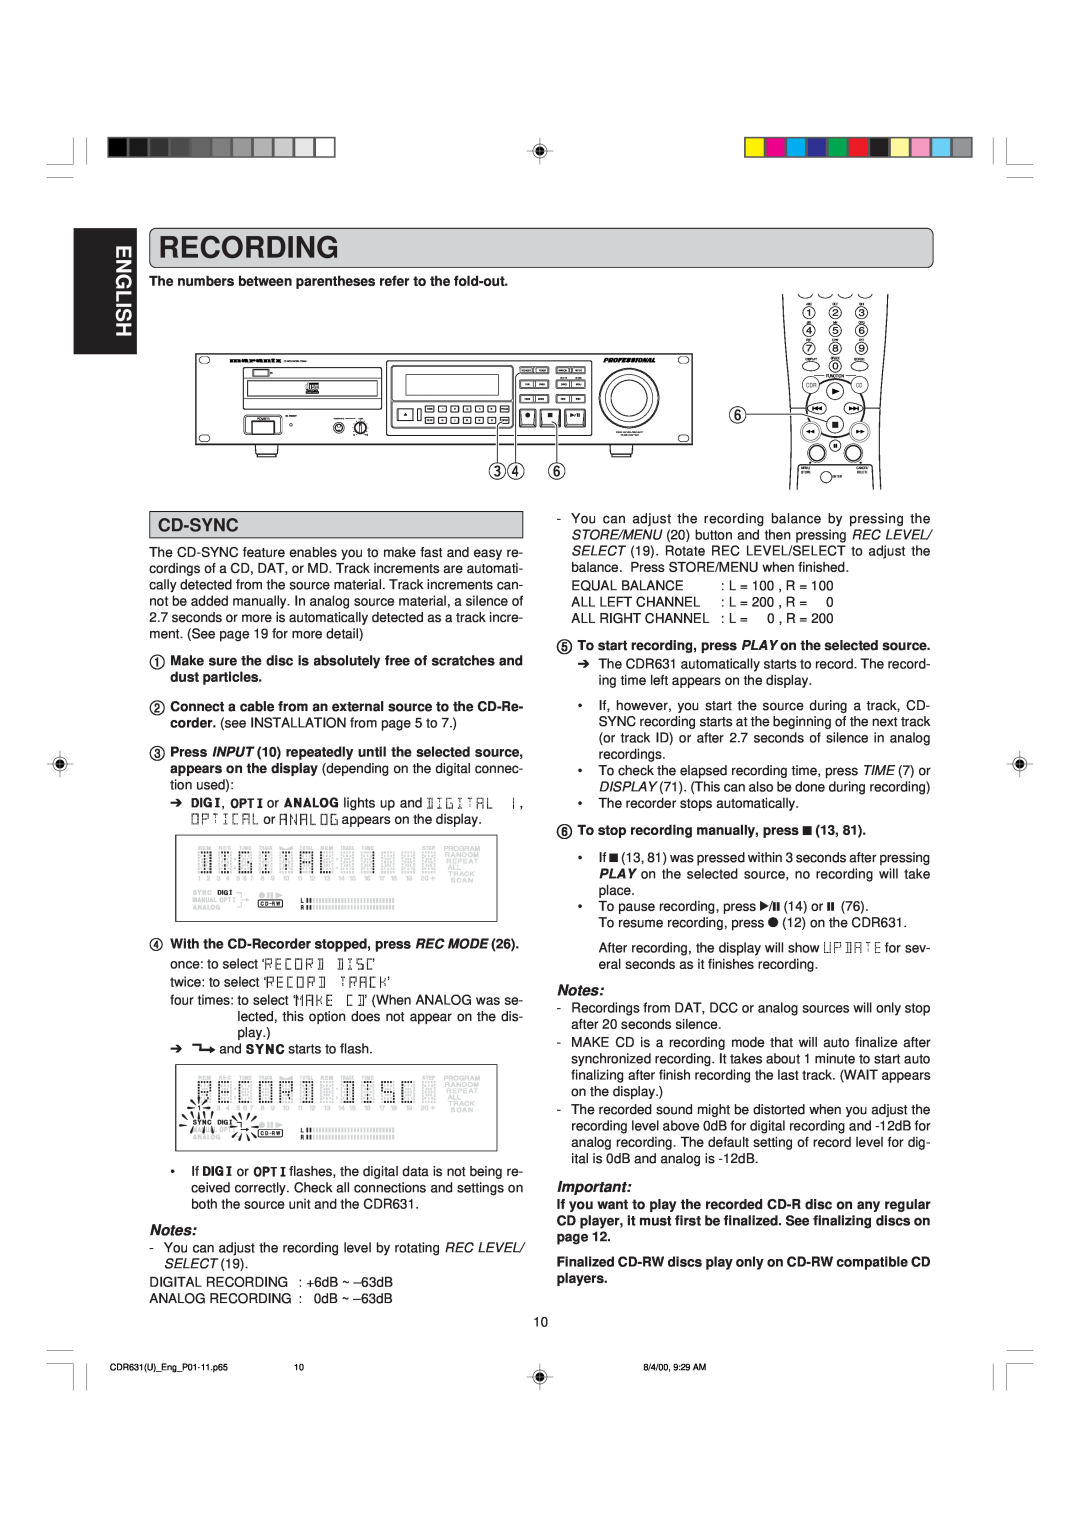 Marantz CDR631 manual Recording, English, Cd-Sync 